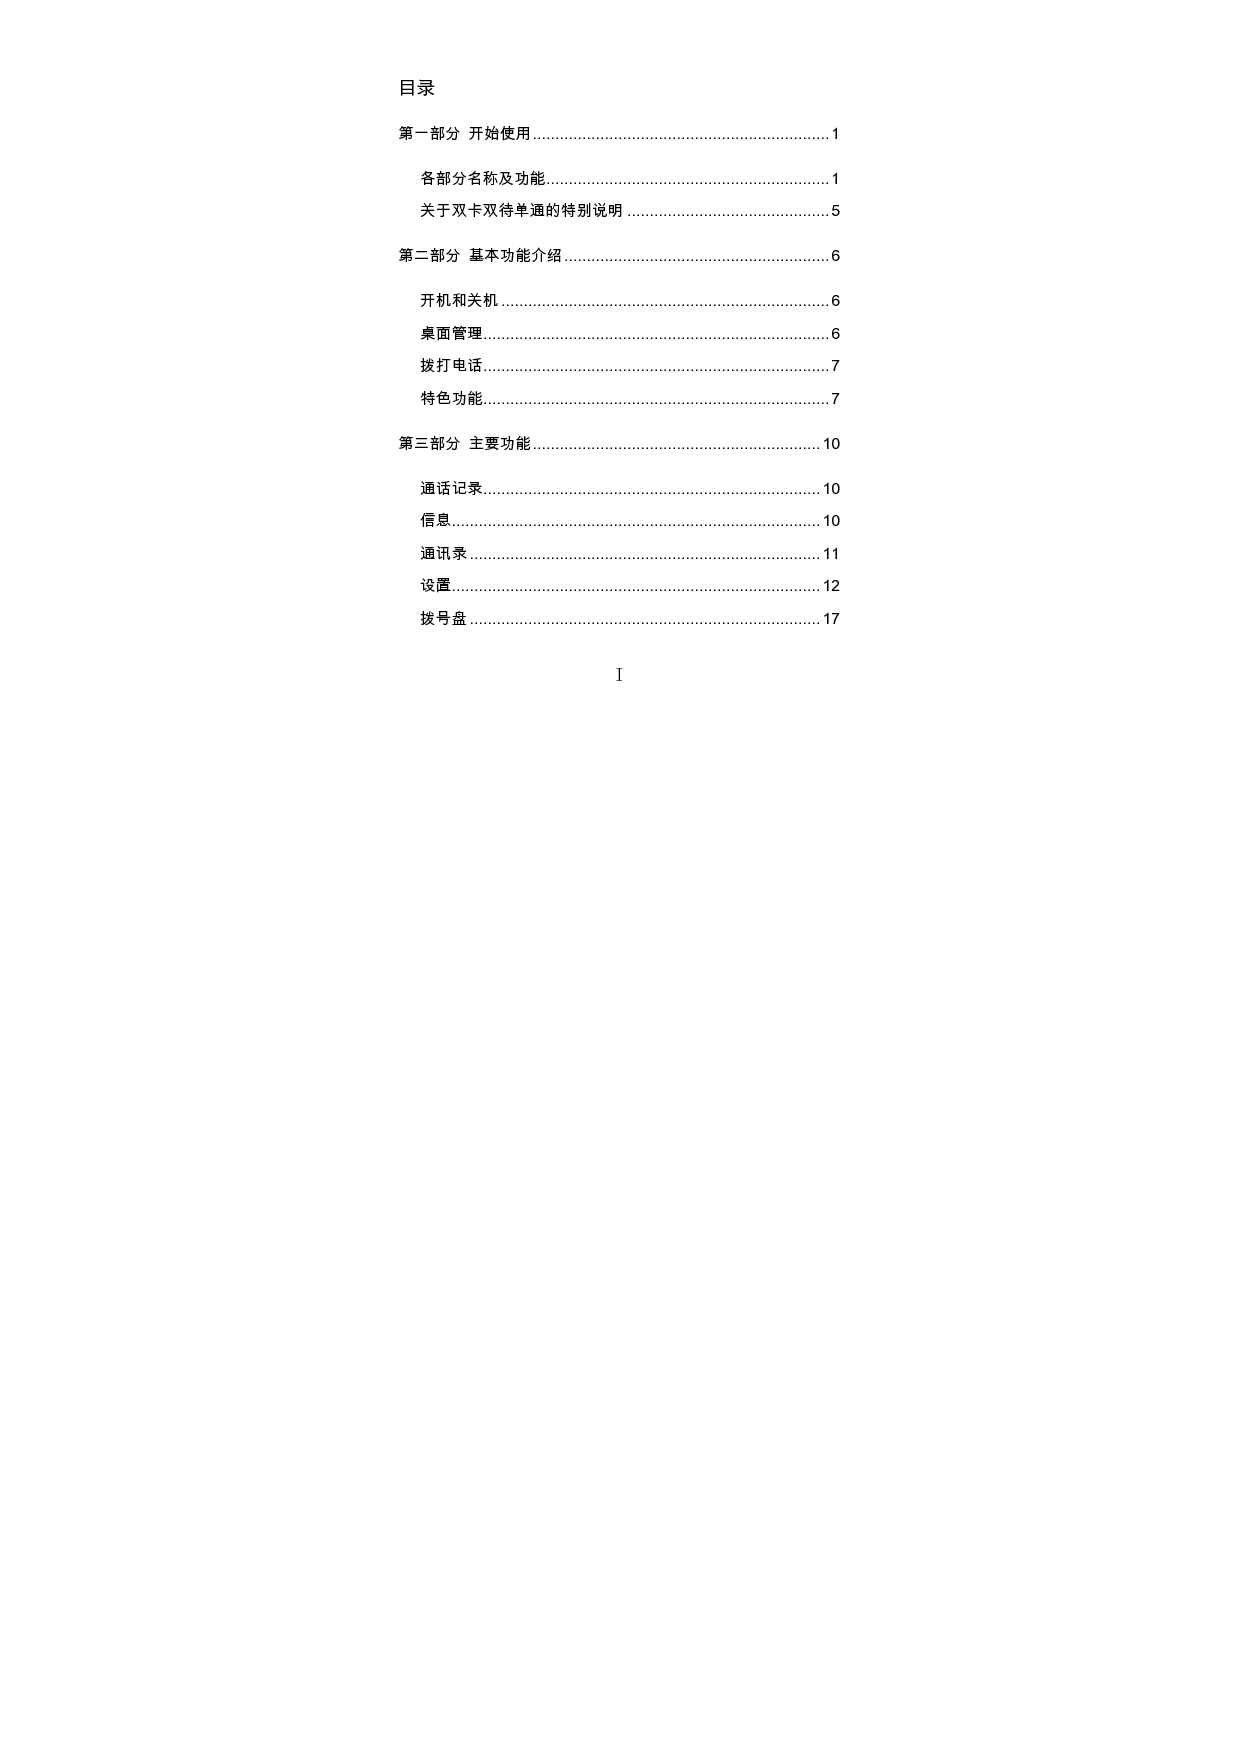 海信 Hisense HS-U950 用户指南 第2页